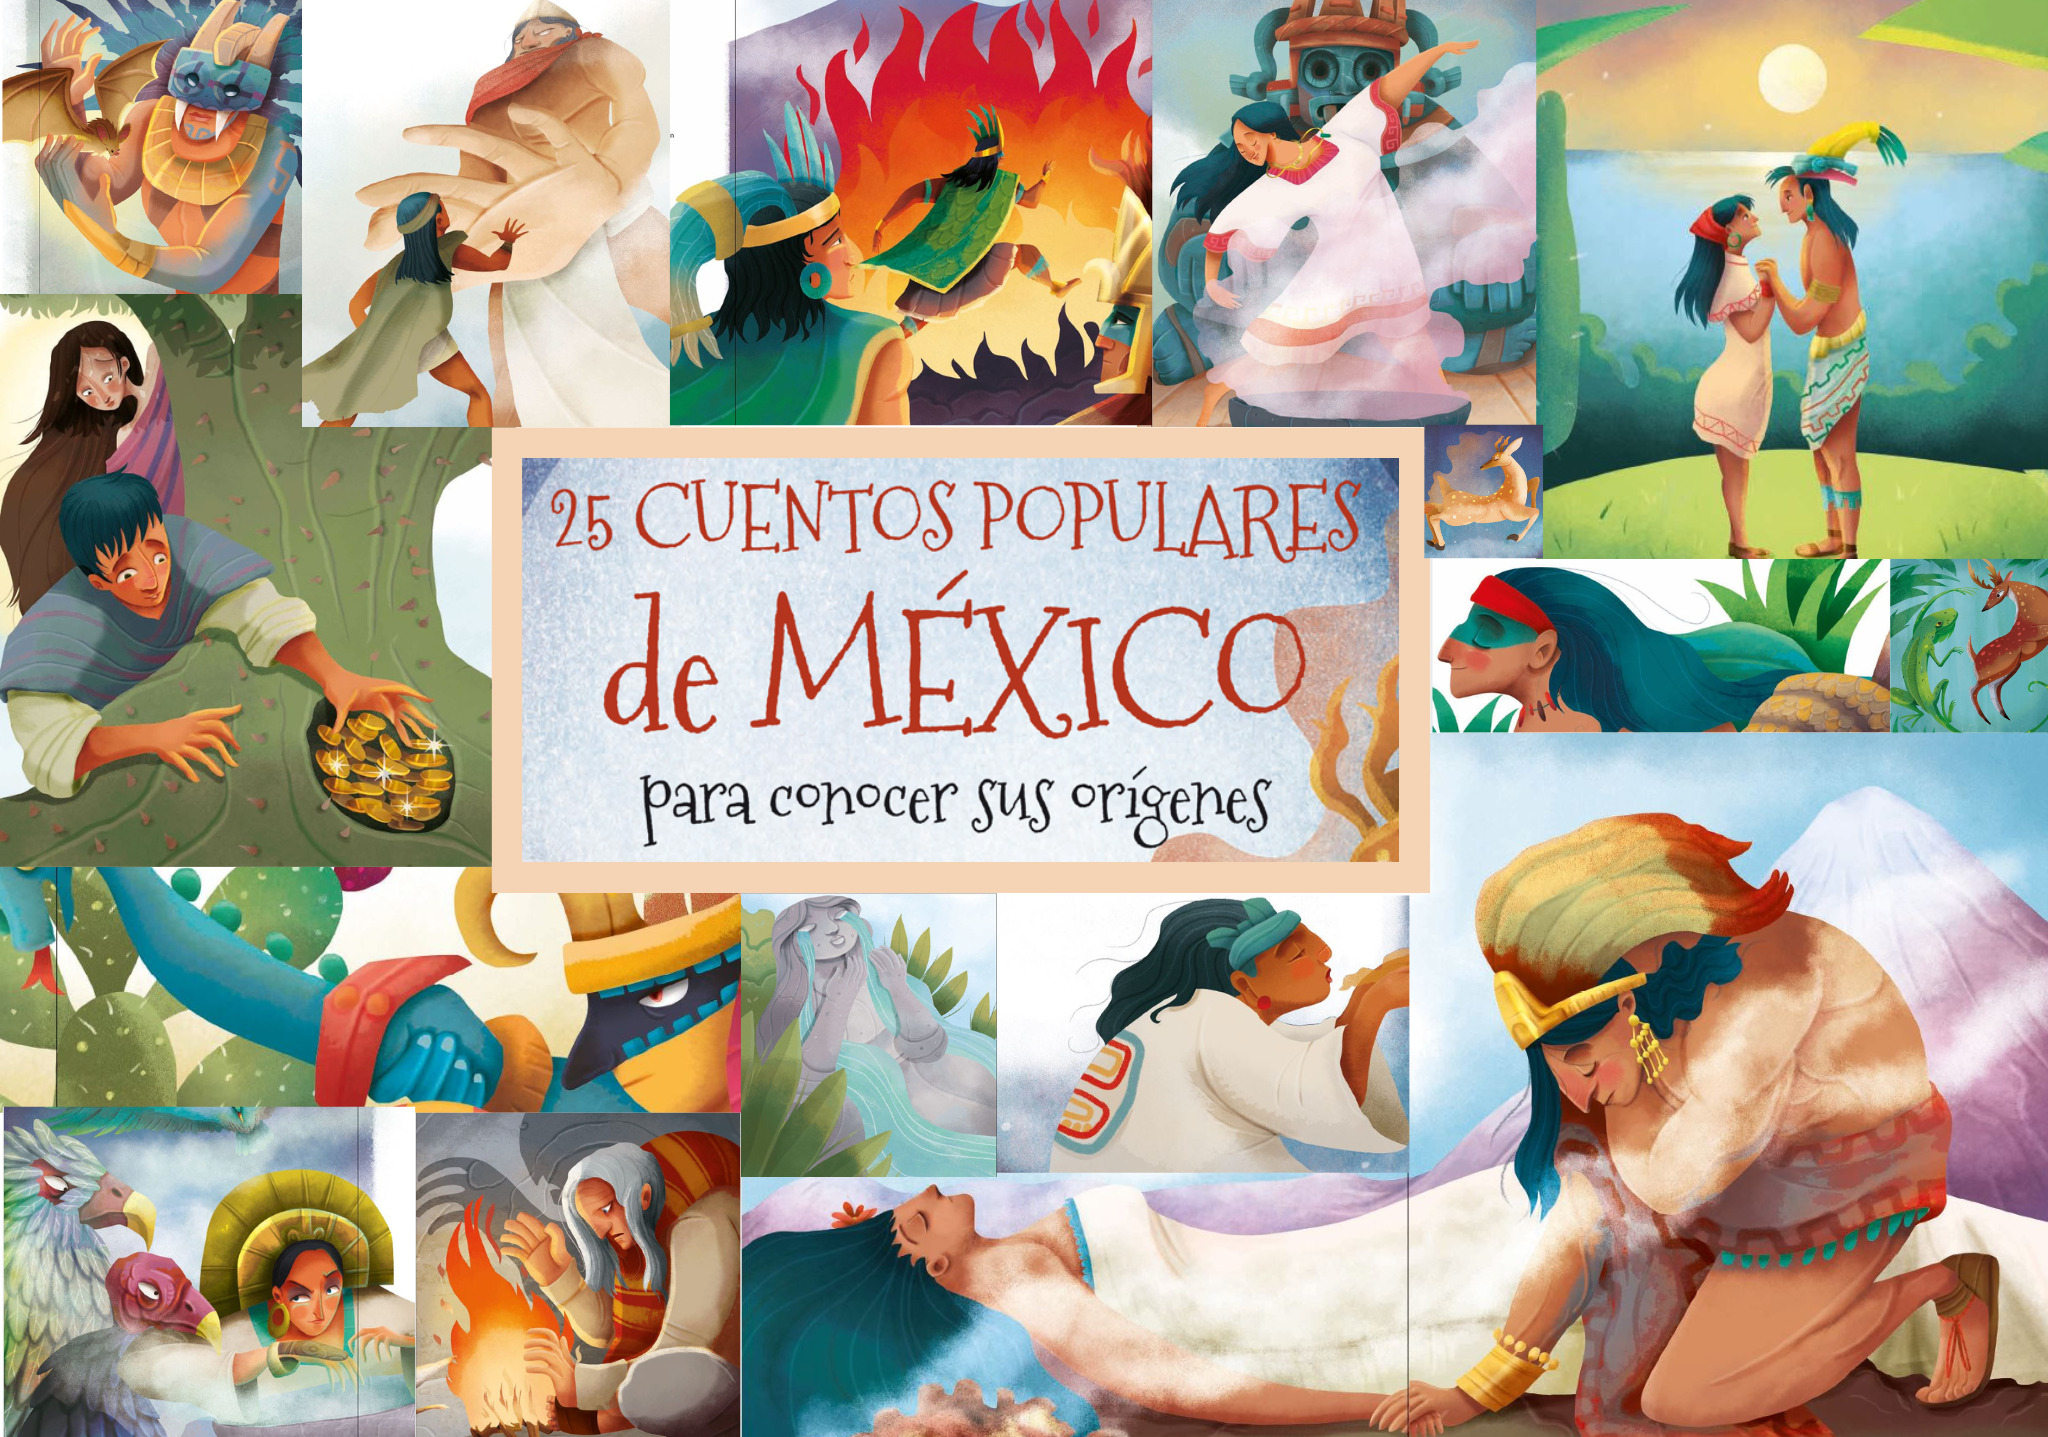 Cuentos de México: tradición y conocimiento